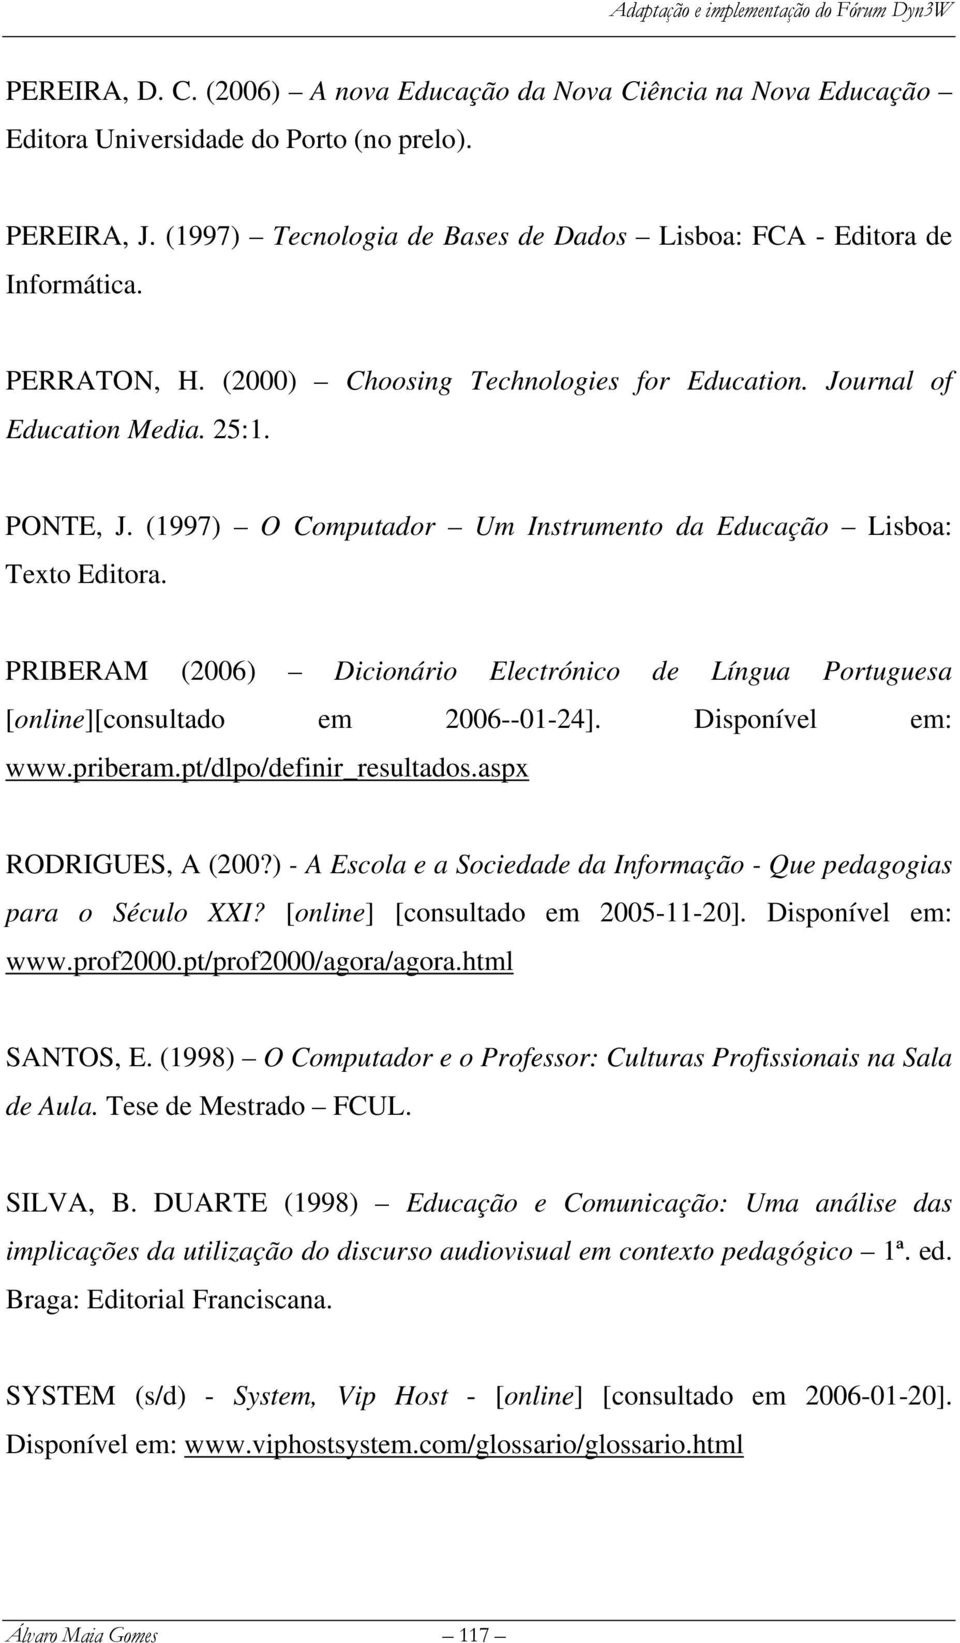 PRIBERAM (2006) Dicionário Electrónico de Língua Portuguesa [online][consultado em 2006--01-24]. Disponível em: www.priberam.pt/dlpo/definir_resultados.aspx RODRIGUES, A (200?